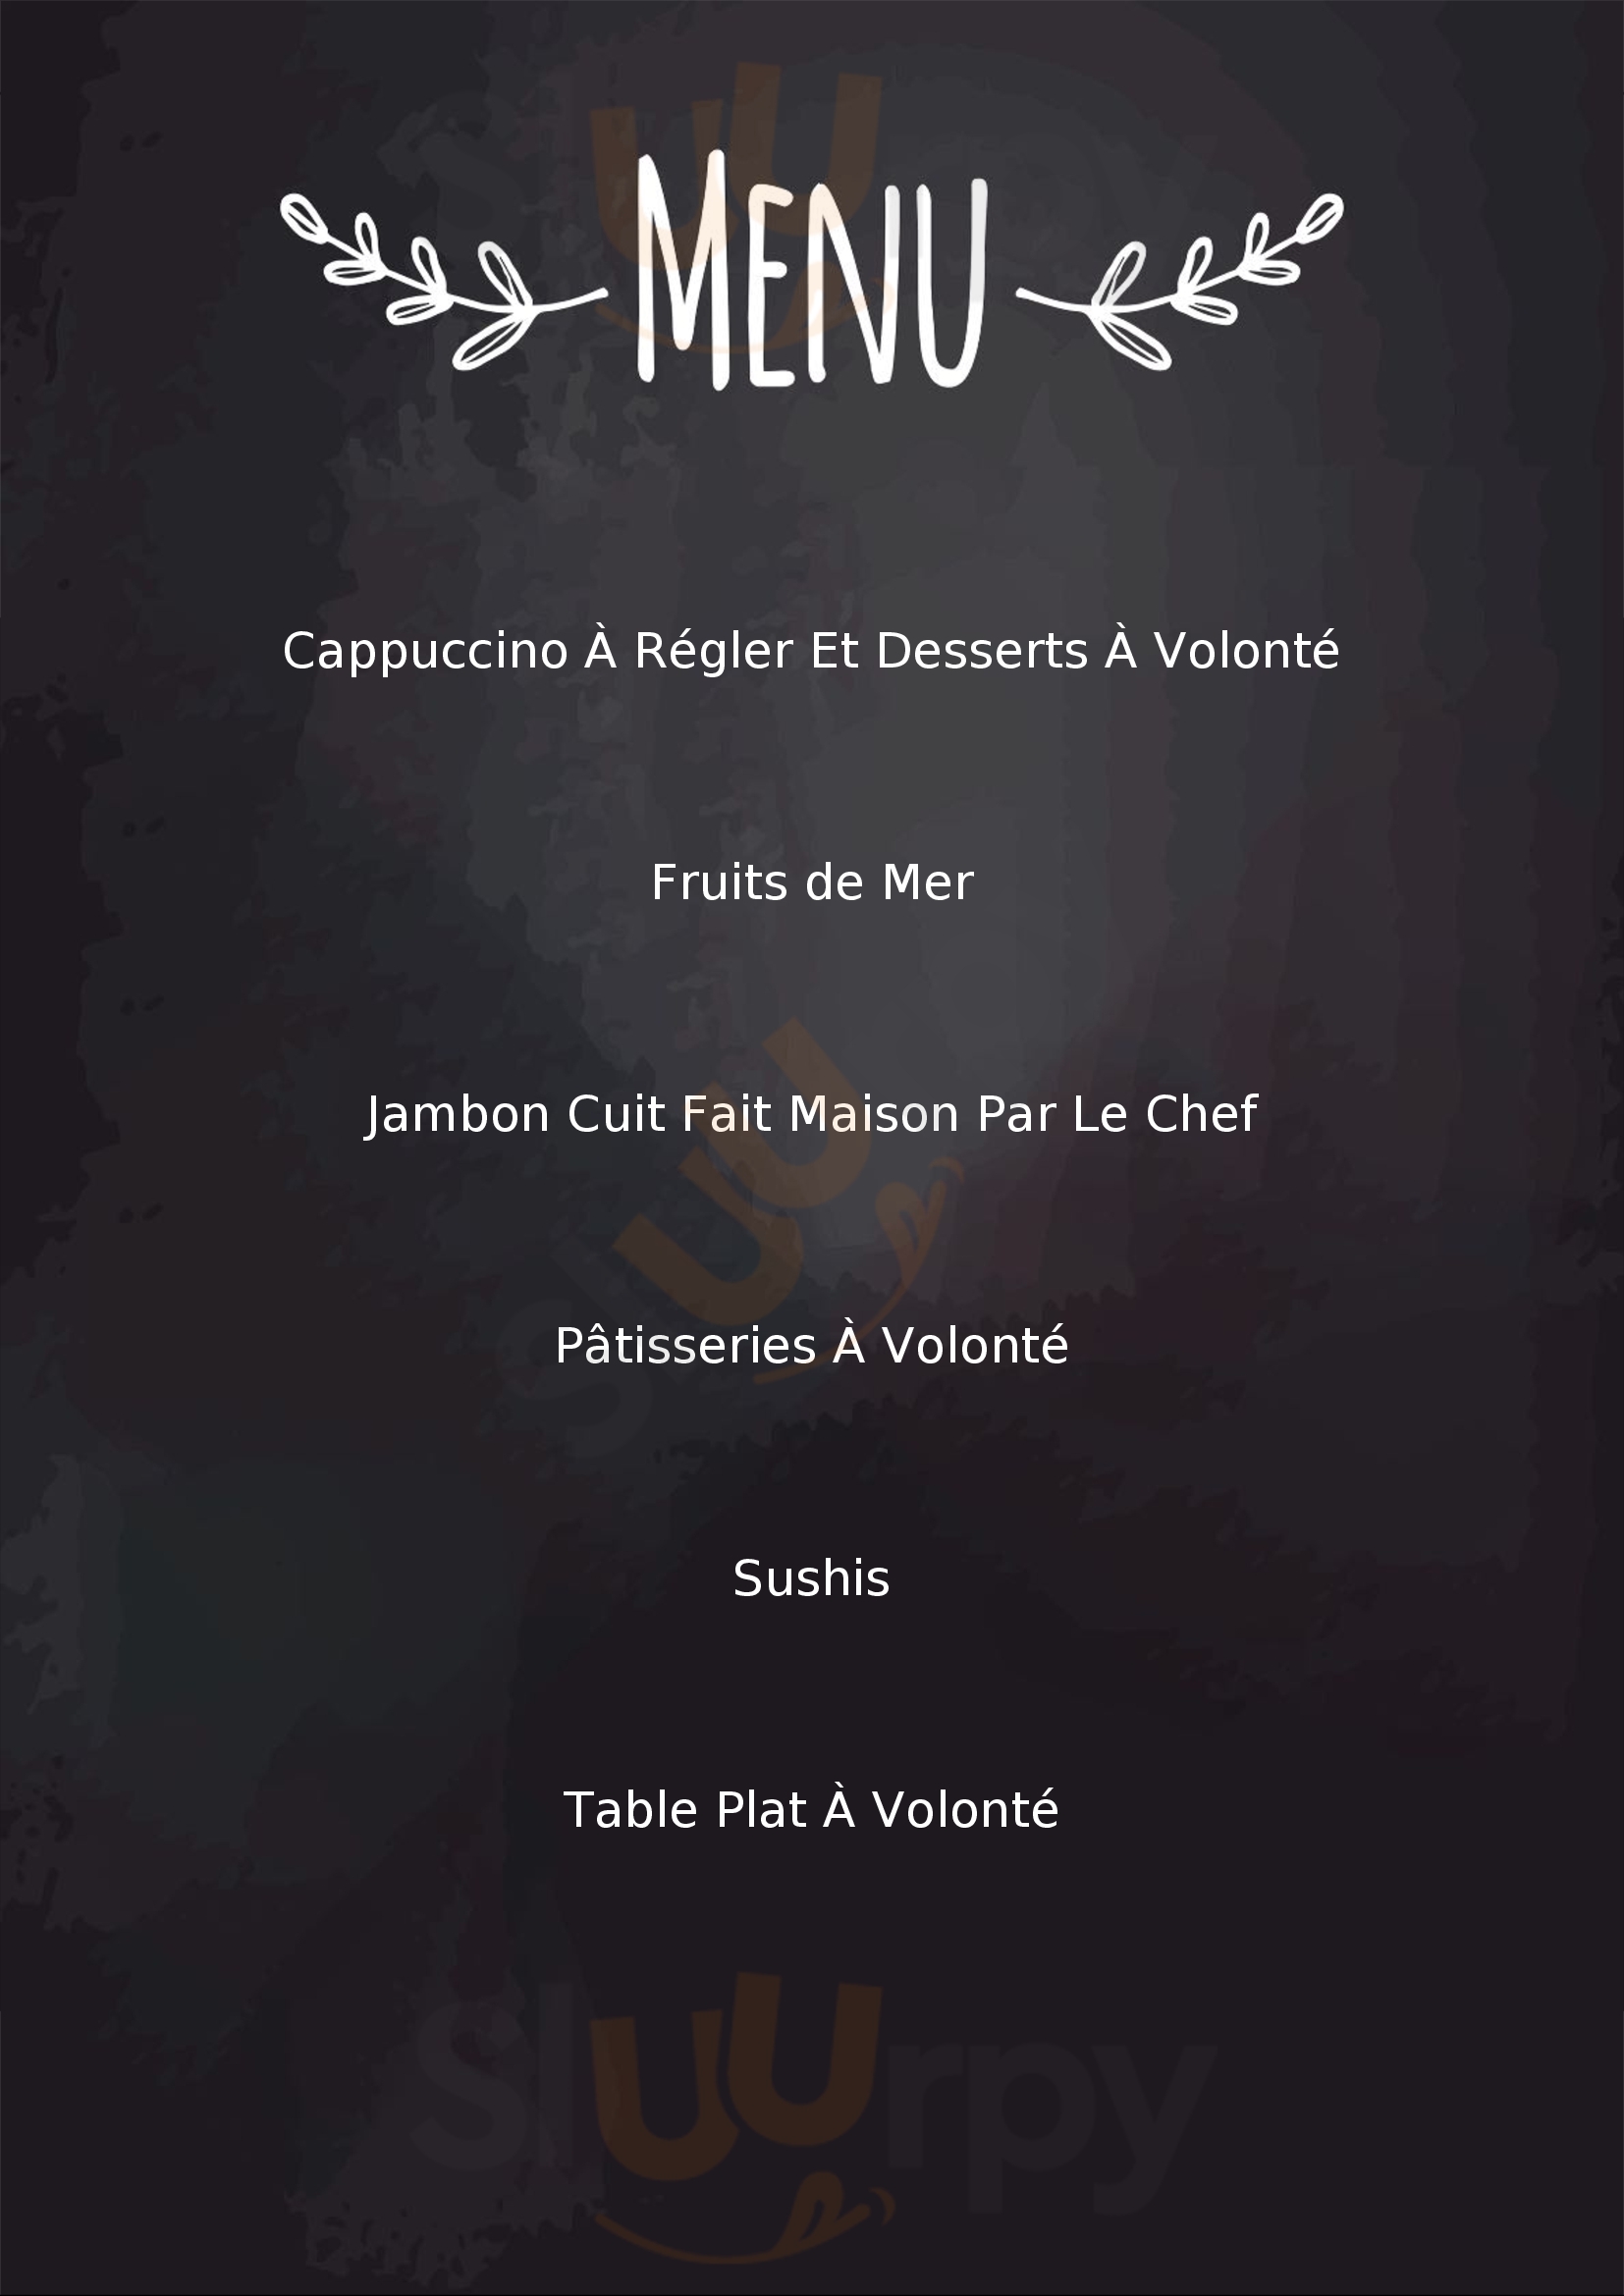 Abondance Restaurant-buffet Poitiers Menu - 1